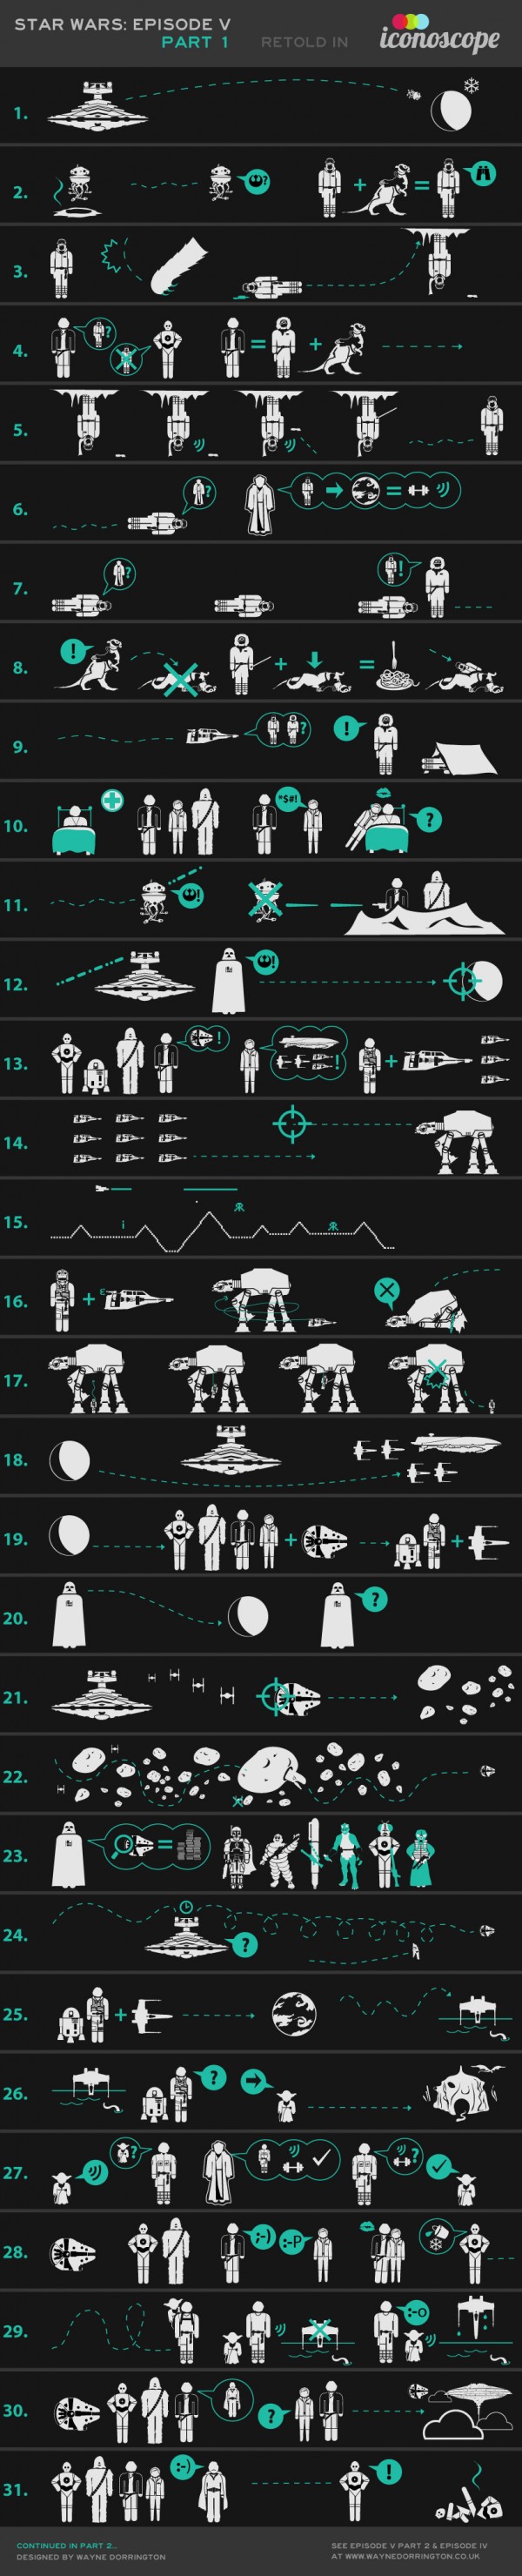 Star Wars Episodio V, la saga desarrollada con íconos continúa [Infografía] 1